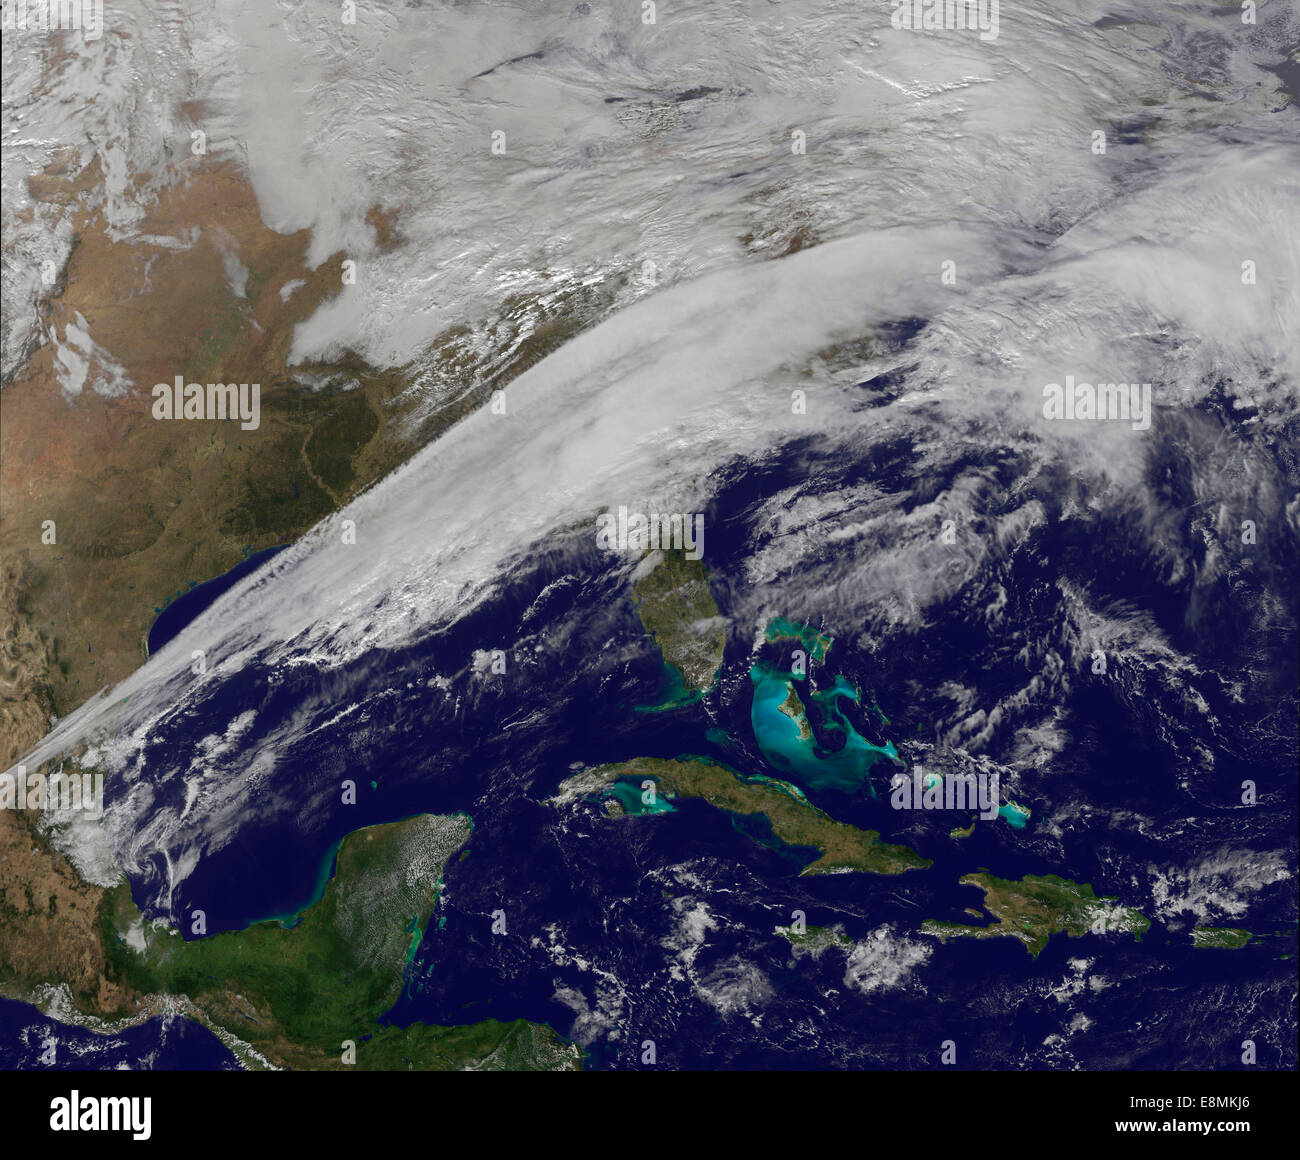 17 décembre 2012 - Image satellite montrant les nuages associés à un système frontal comme une très forte qui s'étend du Texas ligne t Banque D'Images